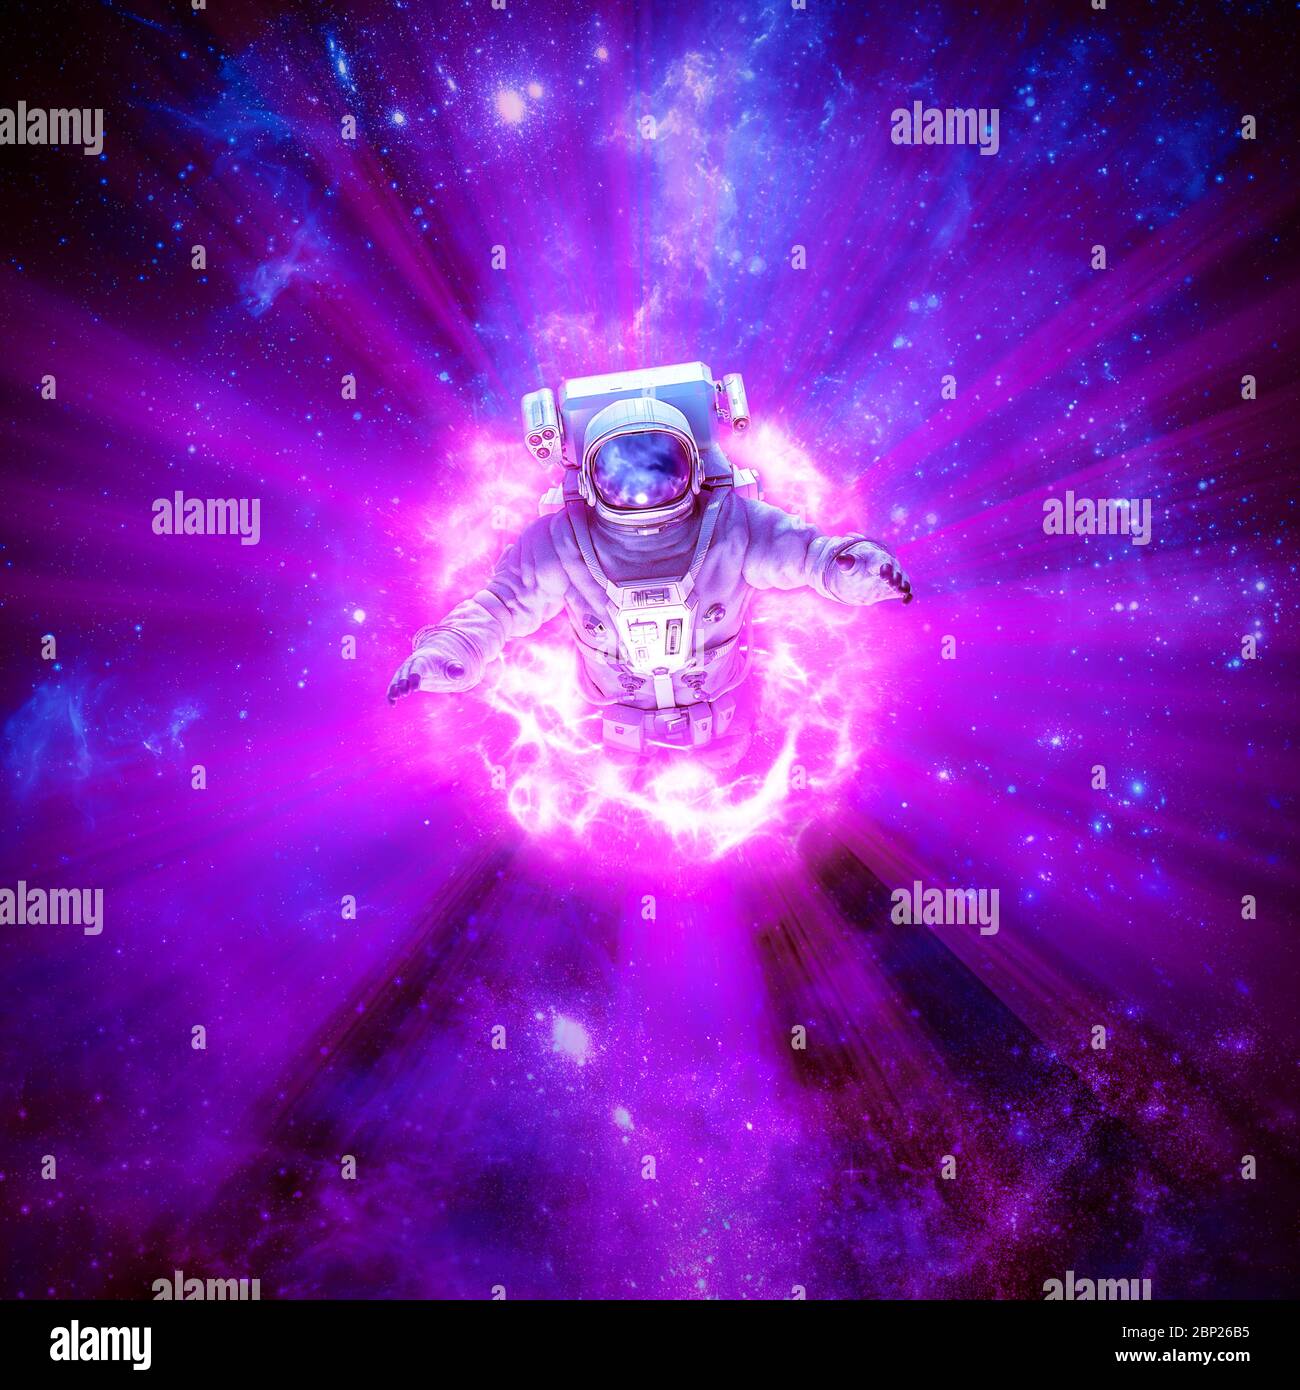 Esplorazione galattica del buco del mondo / illustrazione 3D della scena fantascientifica con astronauta che passa attraverso il portale dell'energia incandescente nello spazio Foto Stock